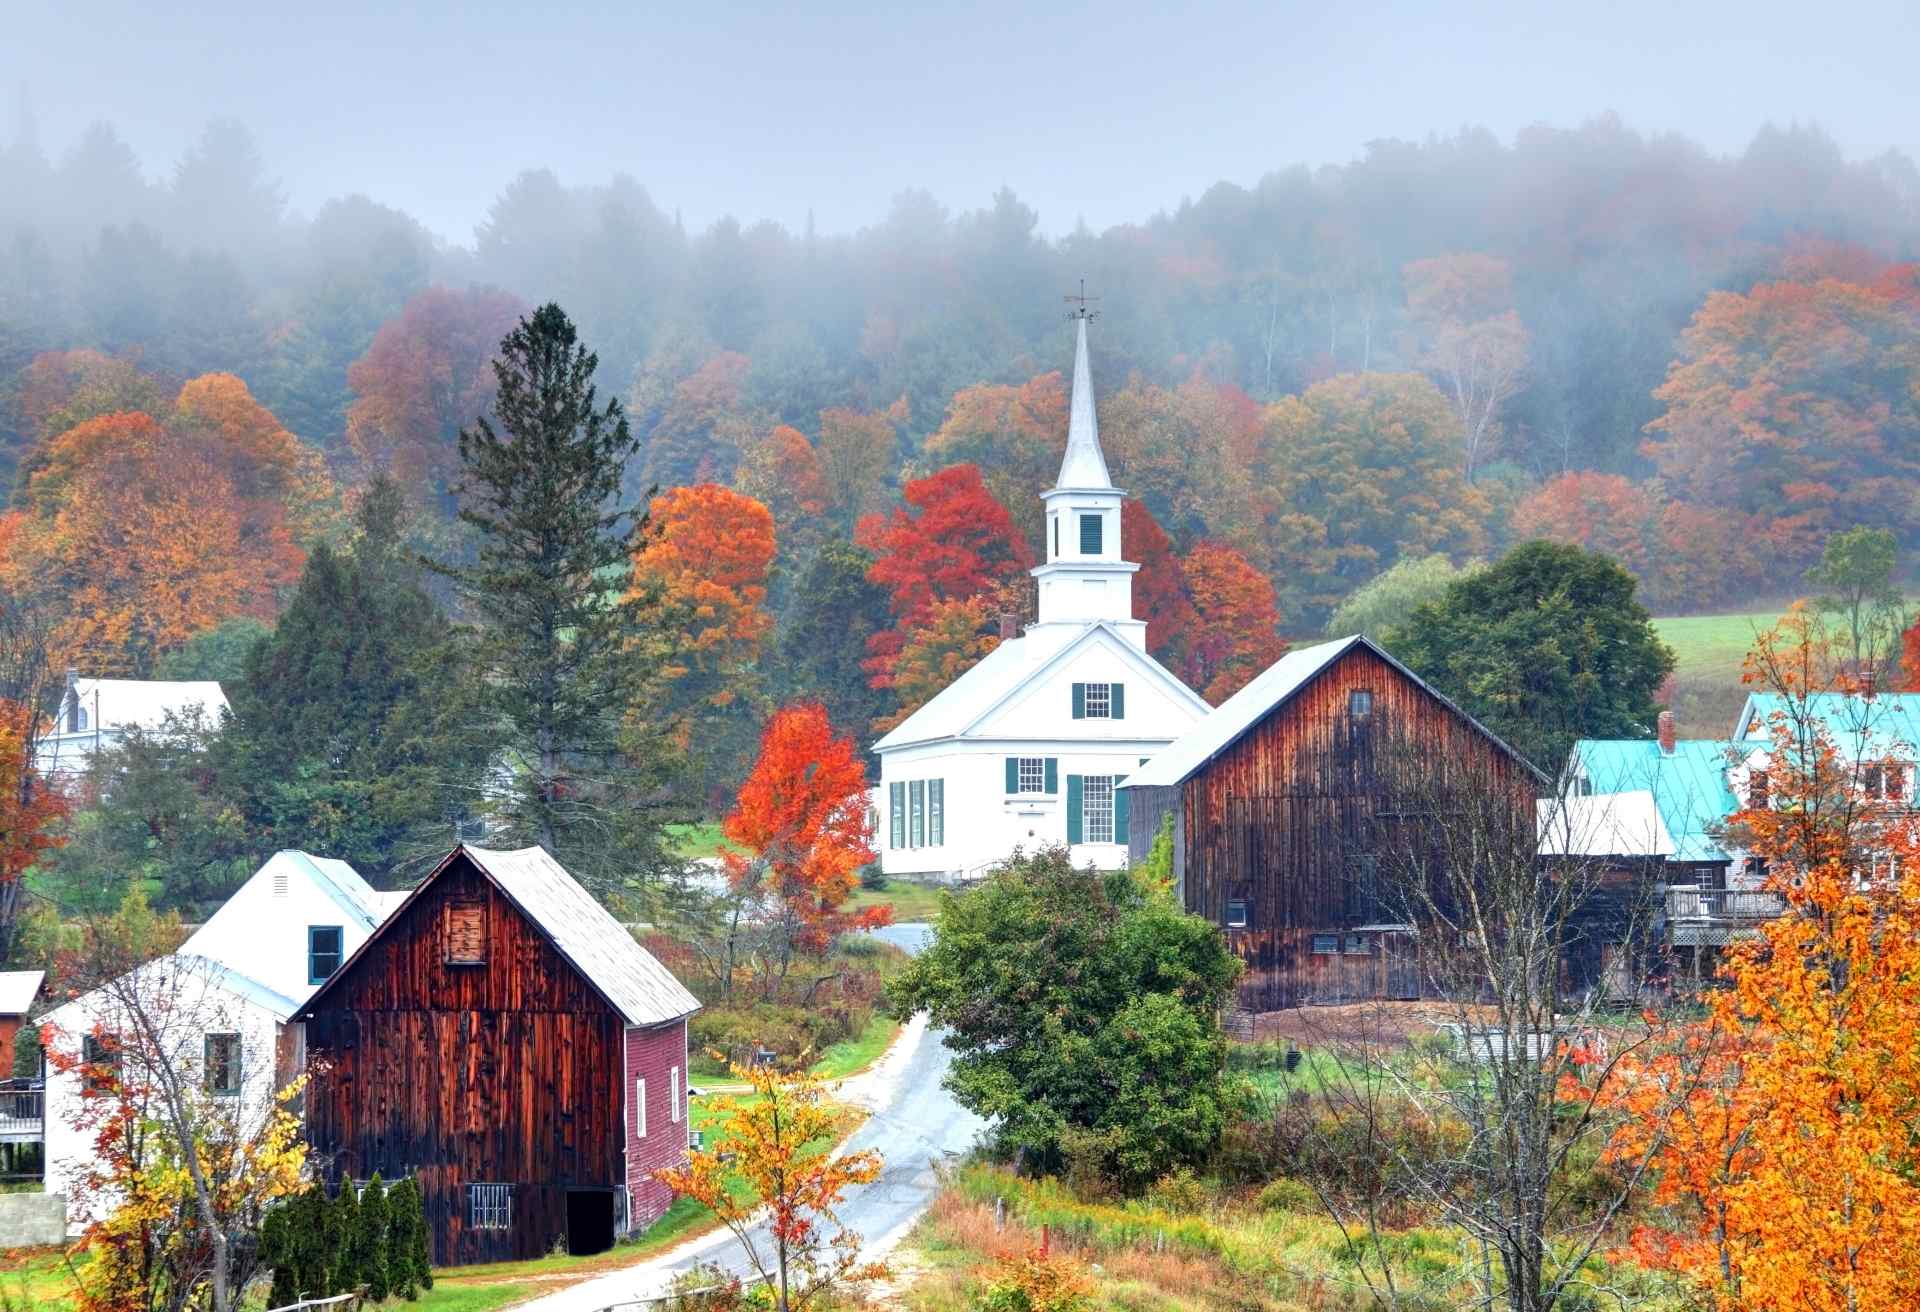 Misty Autumn Foliage in Rural Vermont